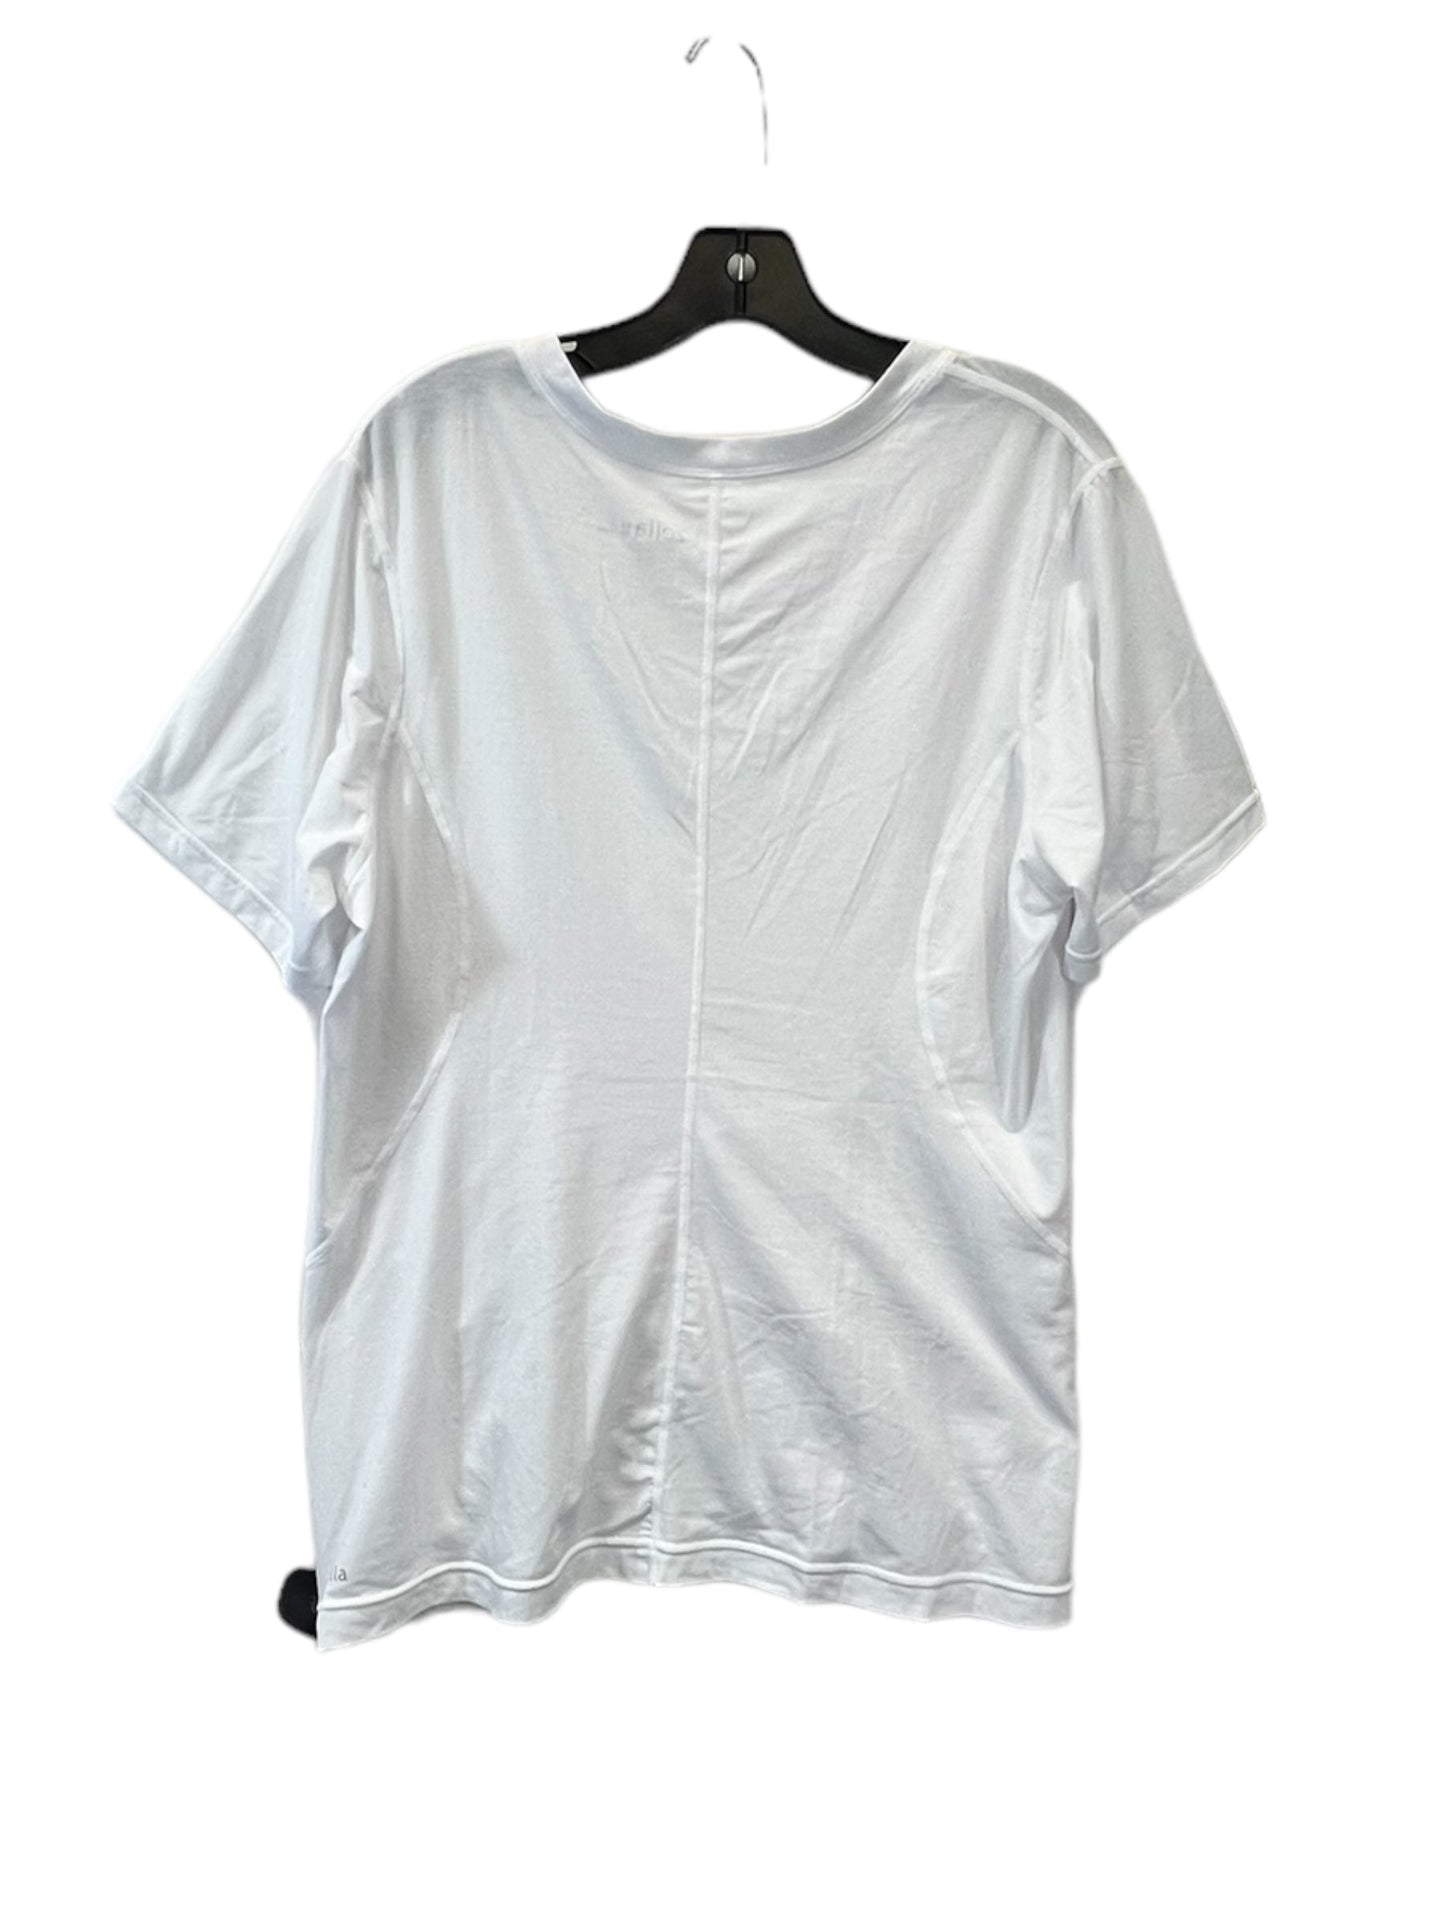 White Top Short Sleeve Basic Zella, Size 2x